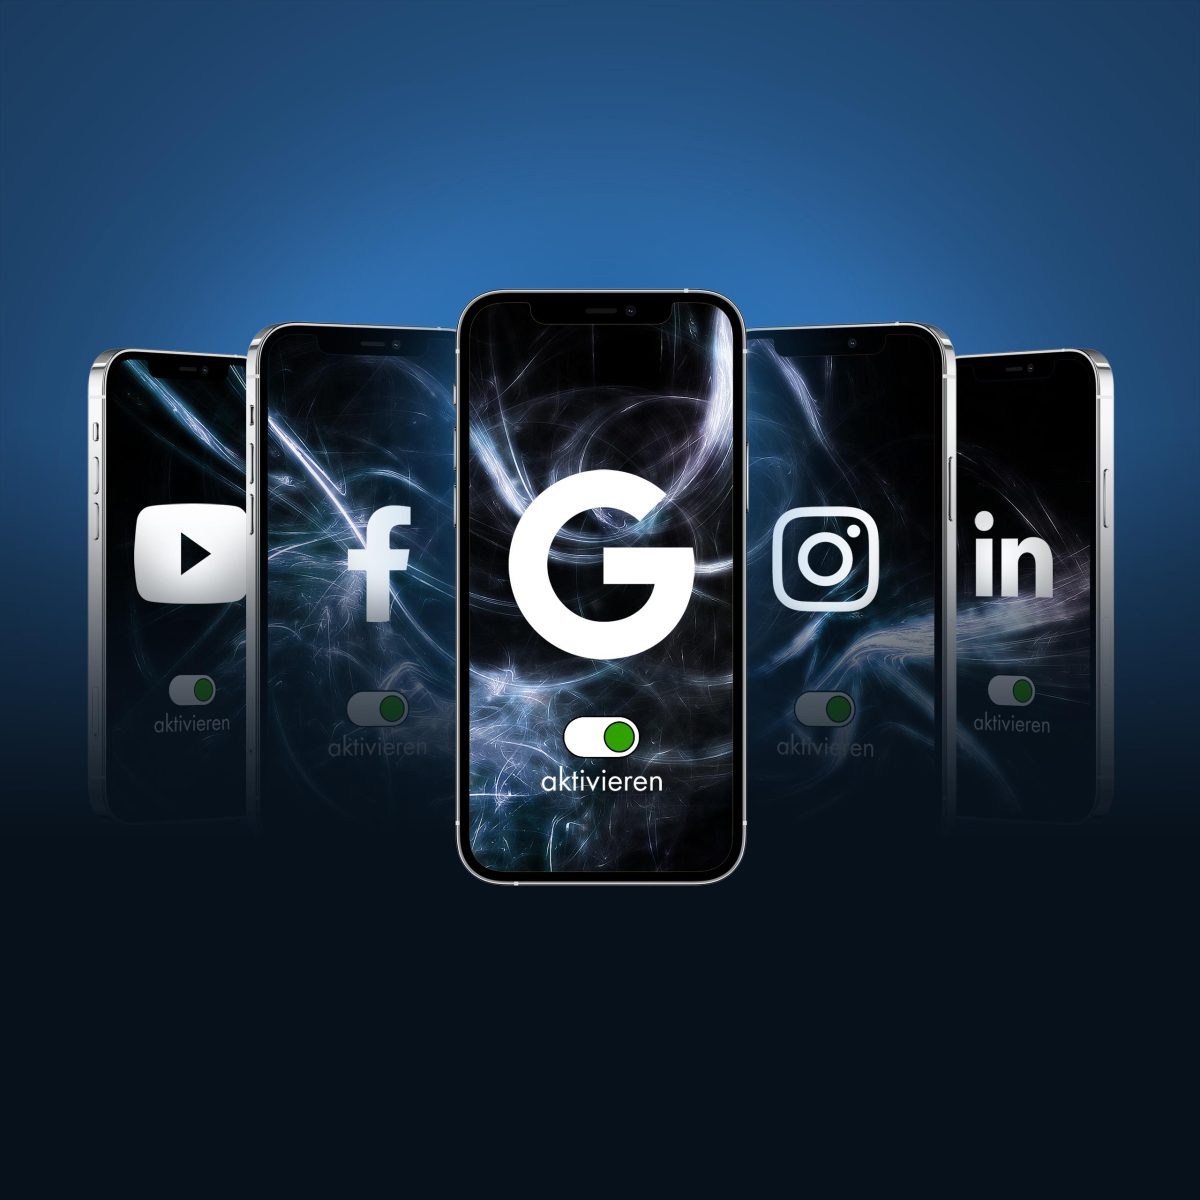 Fünf Smartphones zeigen die Logos von YouTube, Facebook, Google, Instagram und LinkedIn auf den Displays.